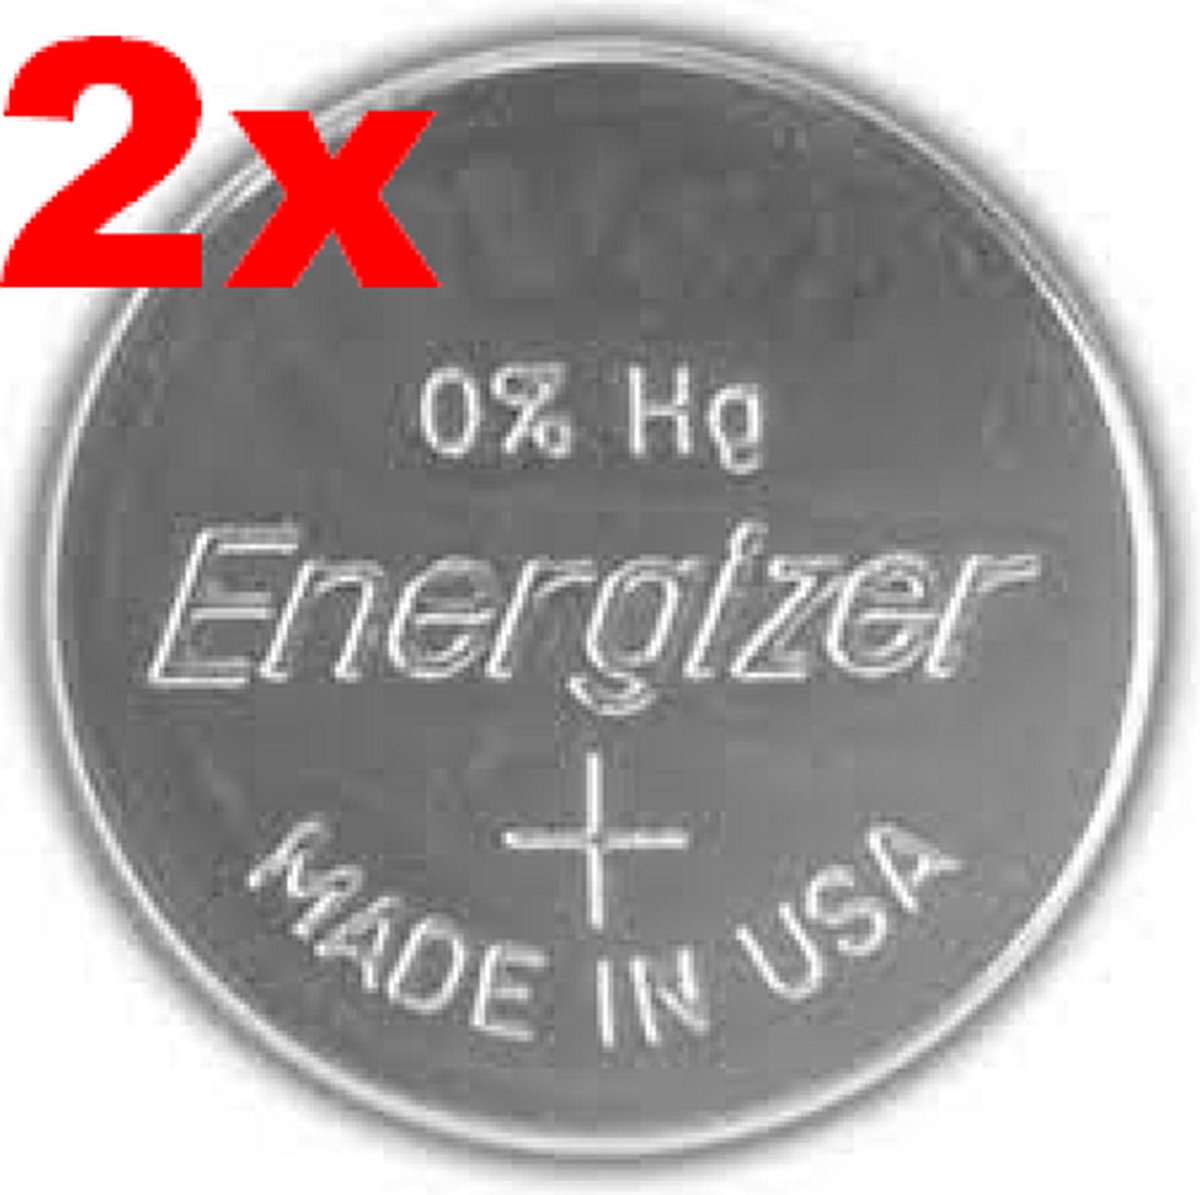 Energizer 397 / 396 / SR726SW ziveroxide knoopcel horlogebatterij 2(twee) stuks